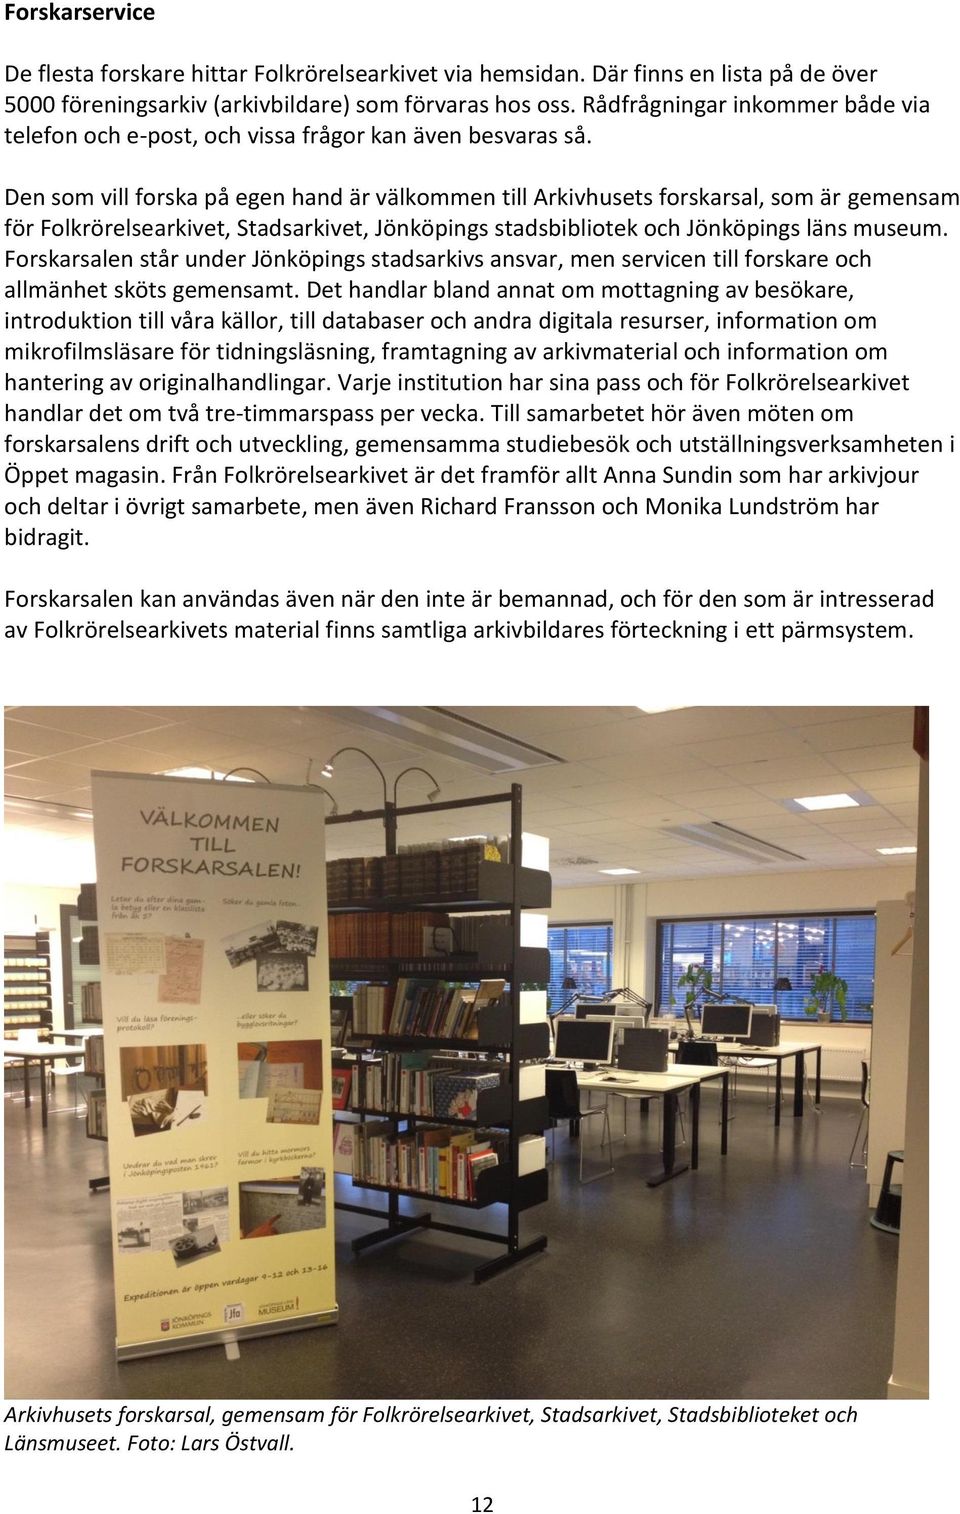 Den som vill forska på egen hand är välkommen till Arkivhusets forskarsal, som är gemensam för Folkrörelsearkivet, Stadsarkivet, Jönköpings stadsbibliotek och Jönköpings läns museum.